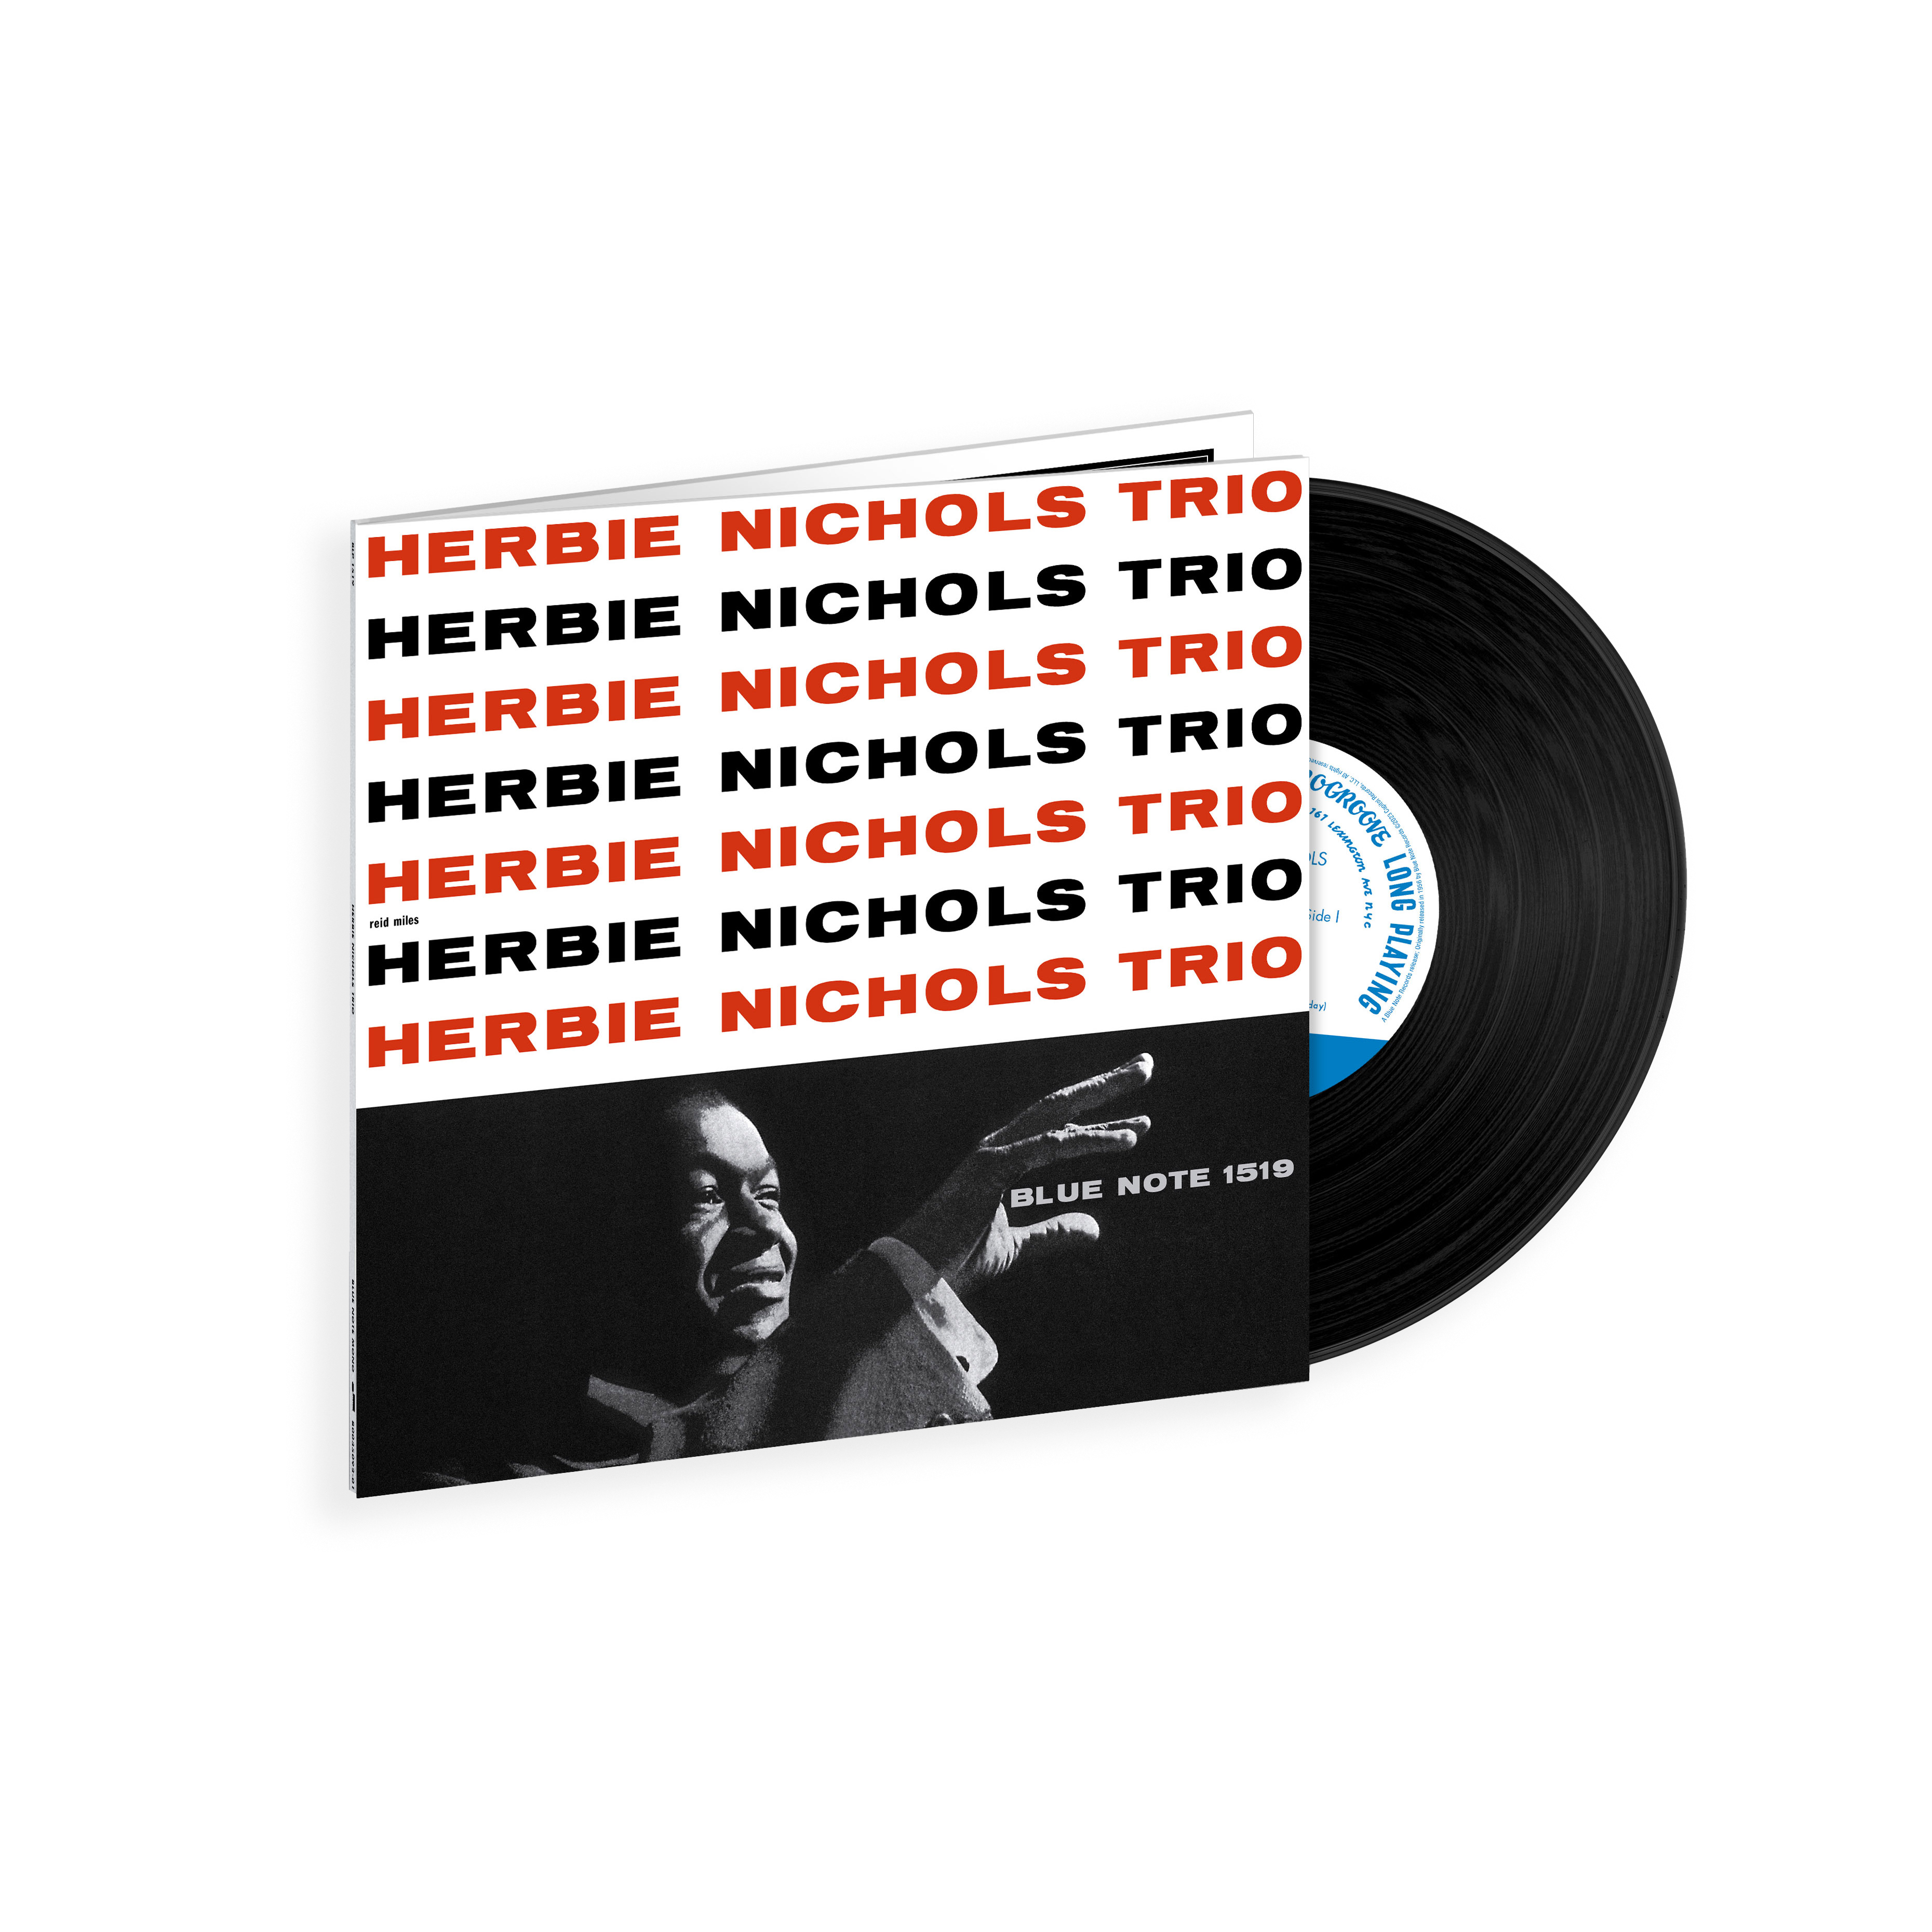 Herbie Nichols Trio - Herbie Nichols Trio (Tone Poet series): Vinyl LP